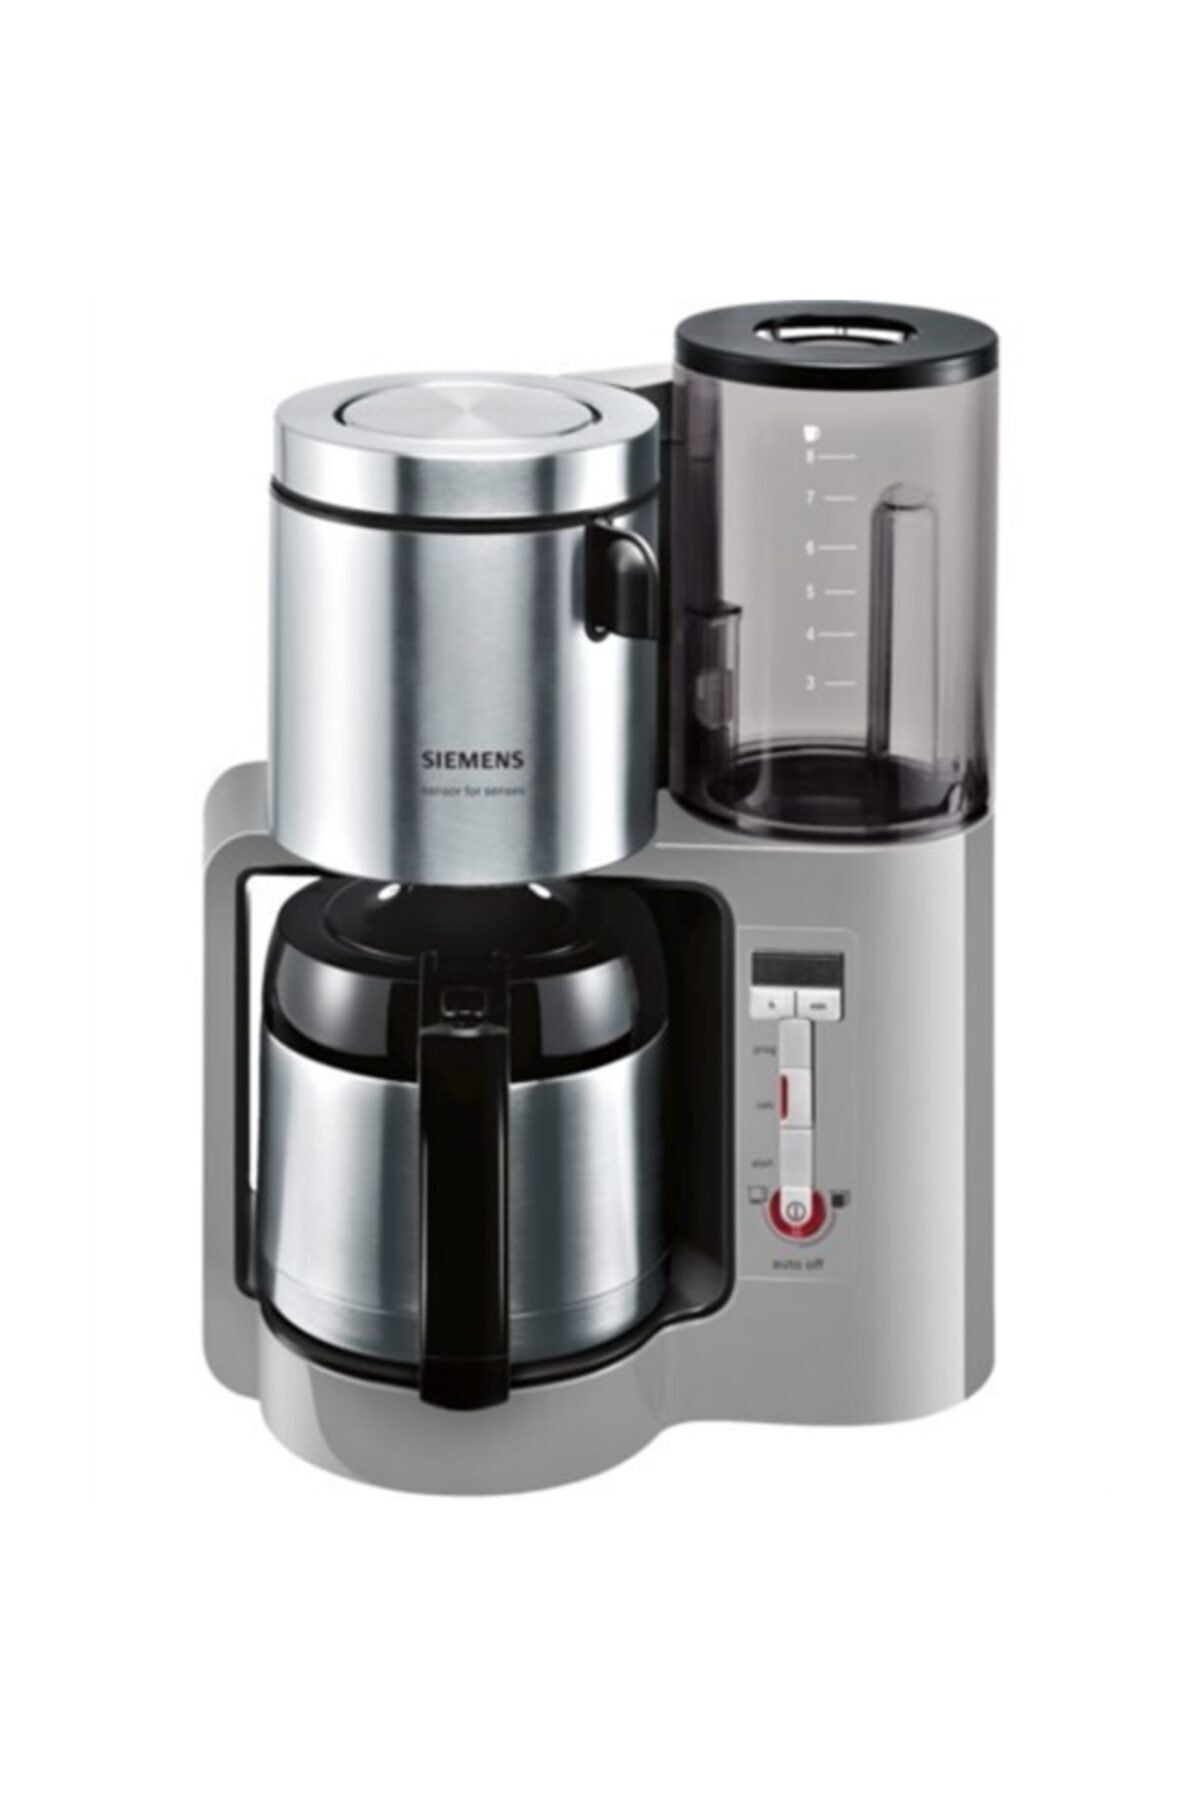 Siemens Tc86505 Filtre Kahve Makinesi